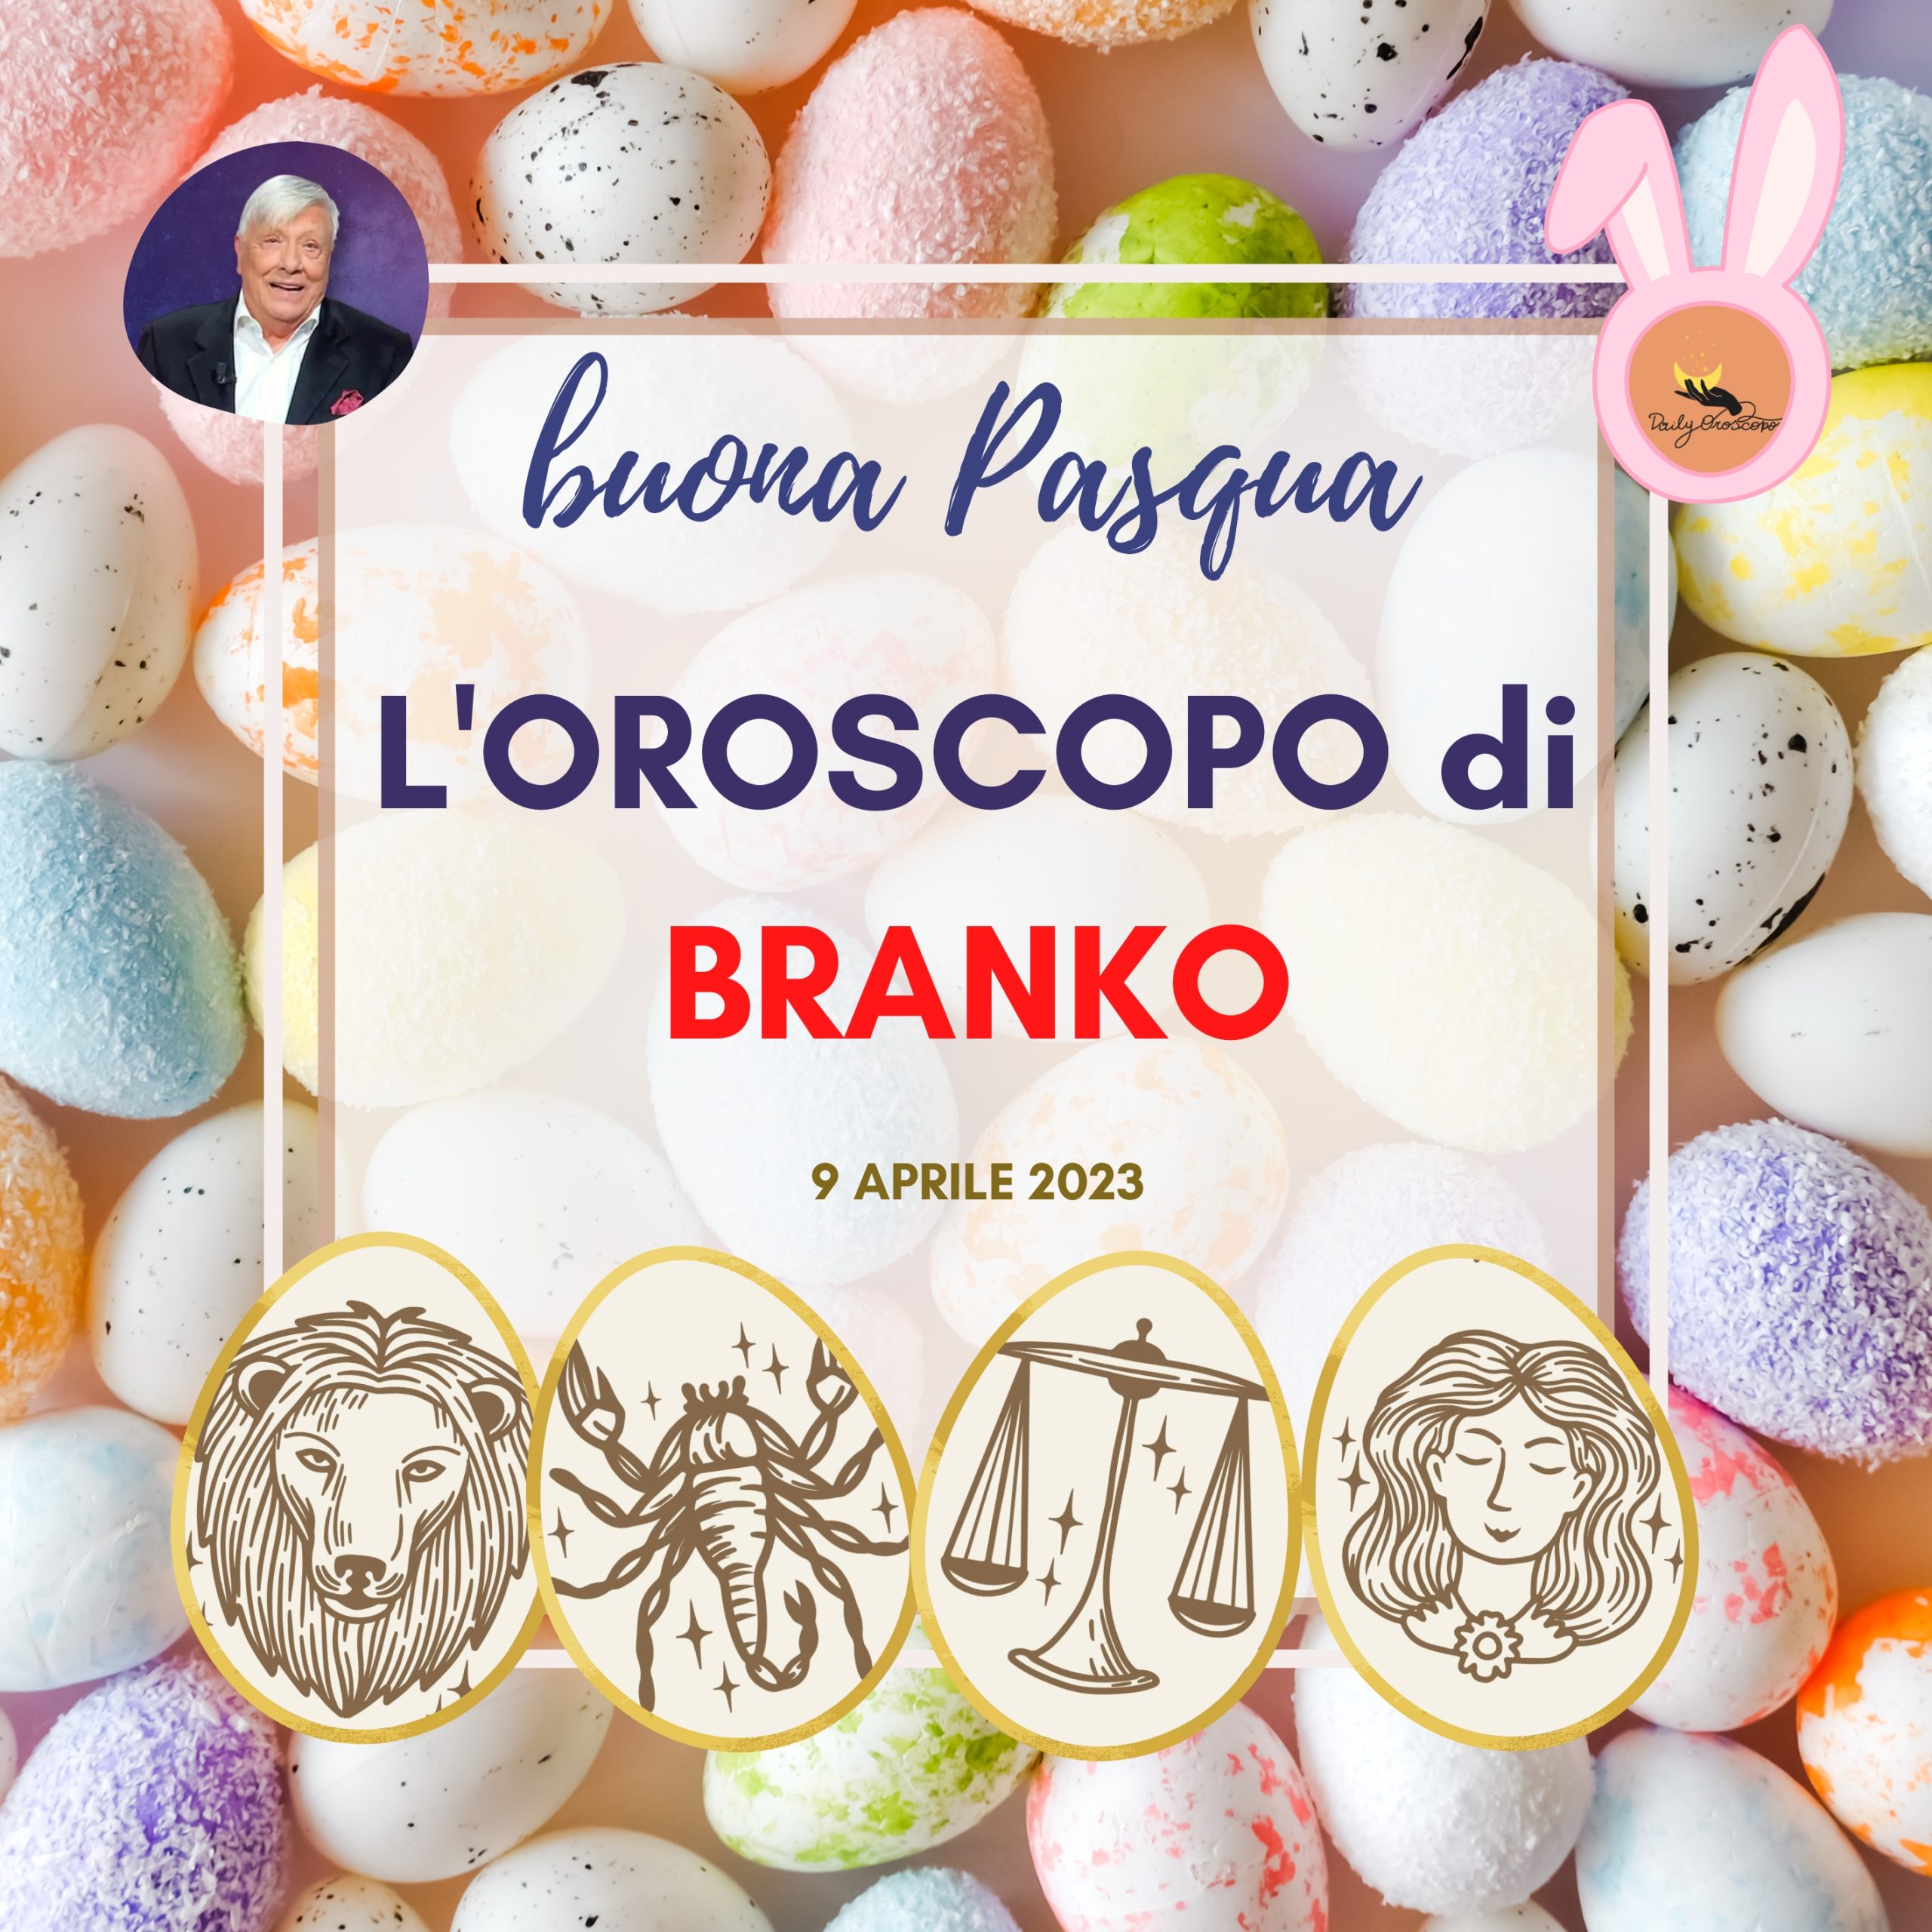 Oroscopo Branko Pasqua 2023 Leone Vergine Bilancia Scorpione